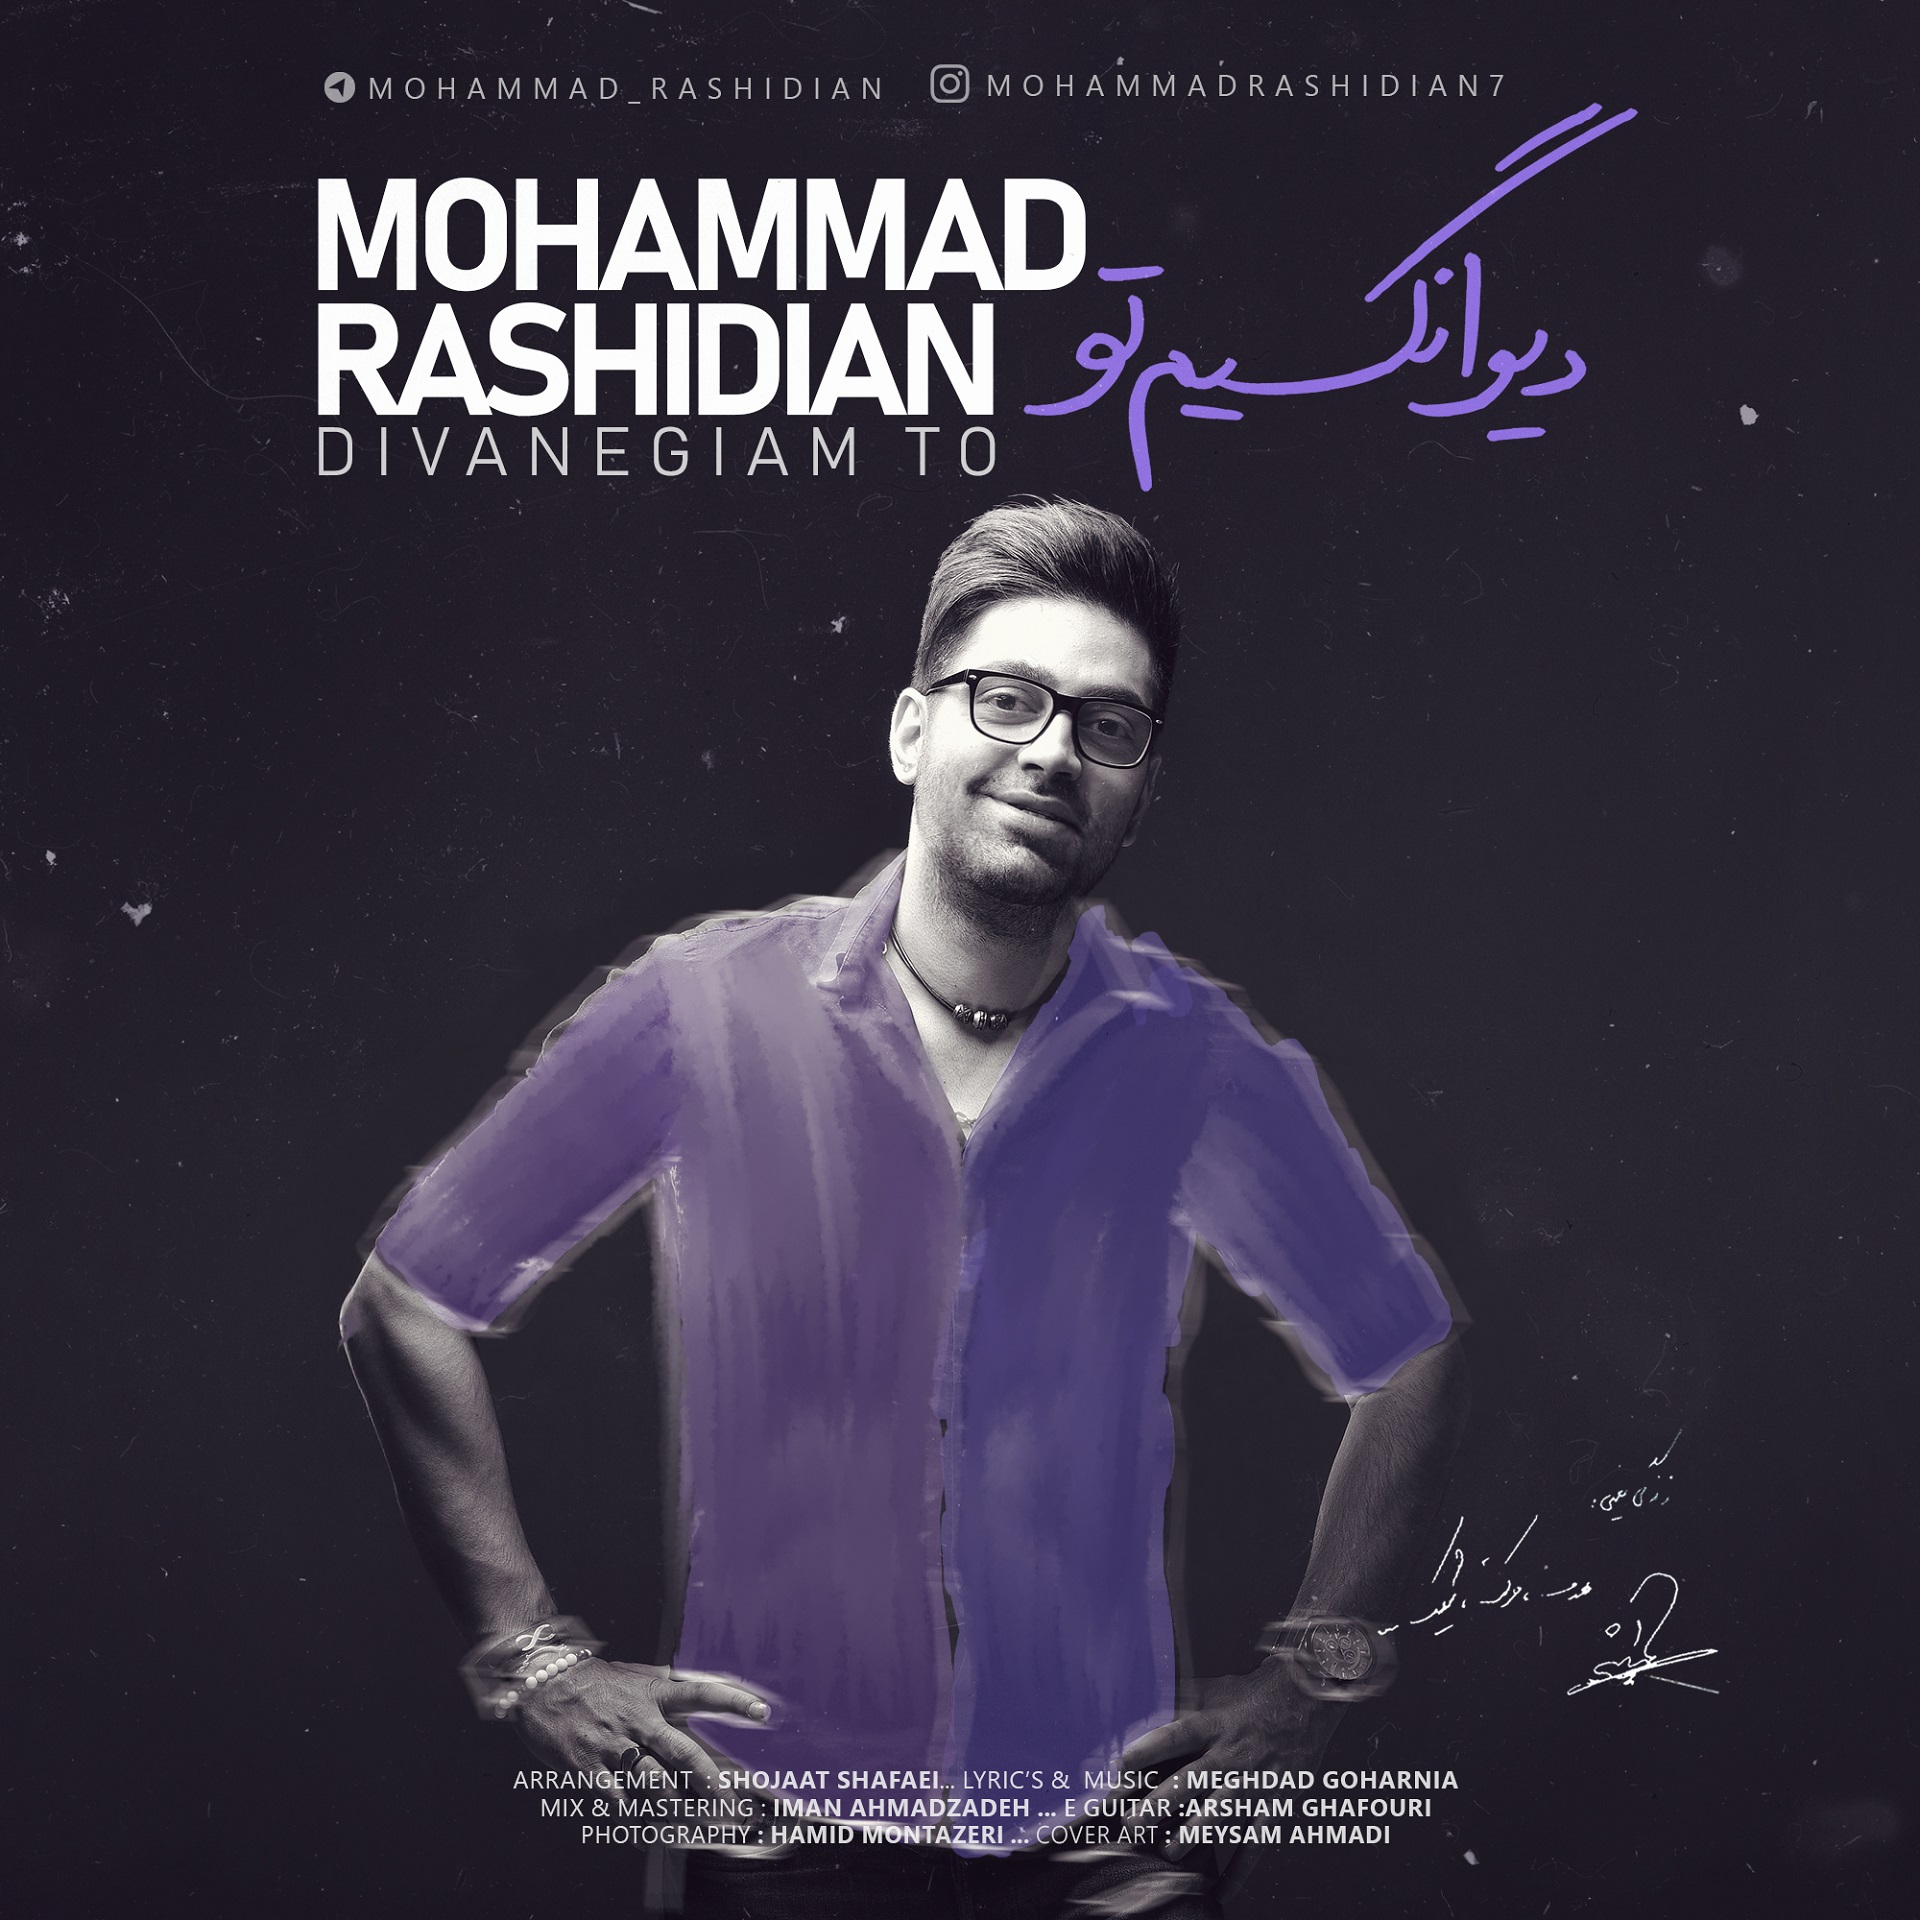  دانلود آهنگ جدید محمد رشیدیان - دیوانگیم تو | Download New Music By Mohammad Rashidian - Divanegiam To